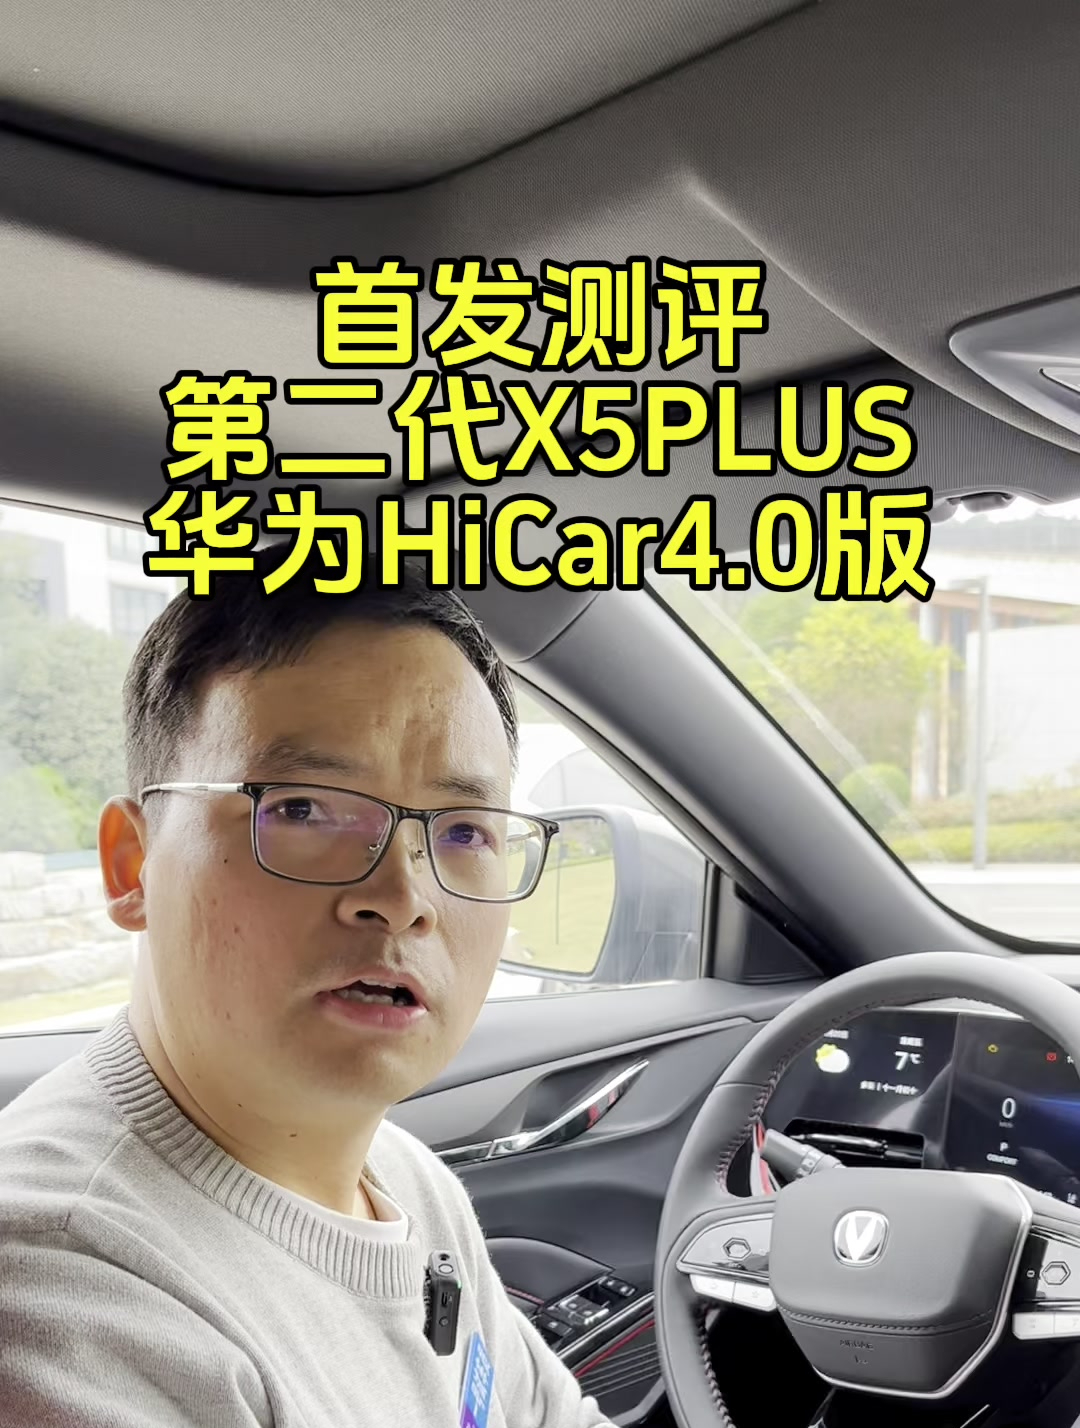 第二代x5plus车机实测之华为hicar40